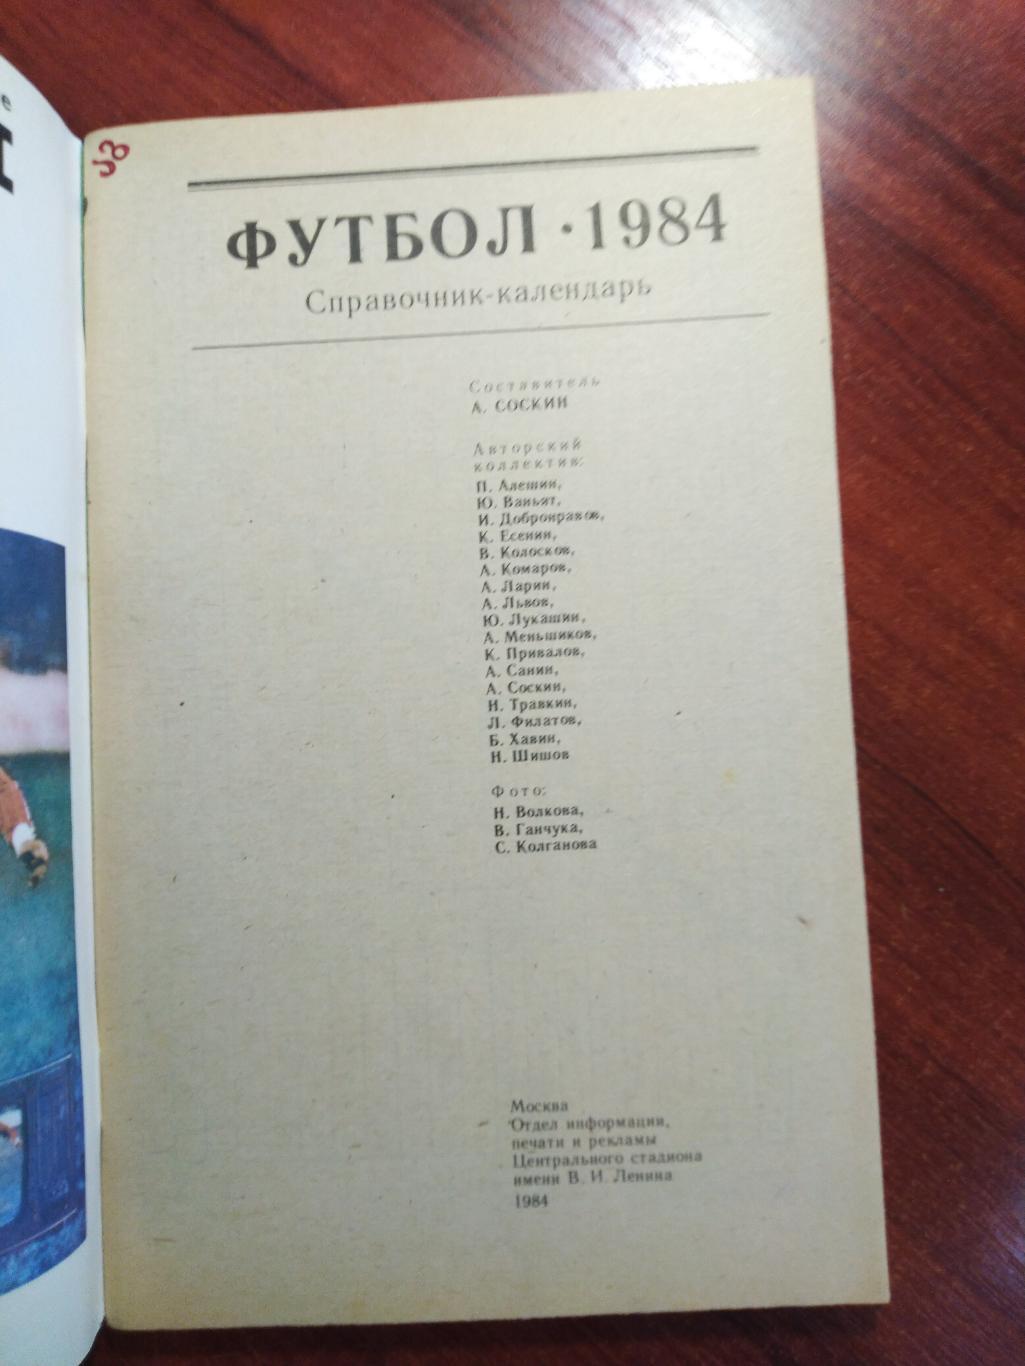 Справочник -календарь Футбол 1984 Москва 1